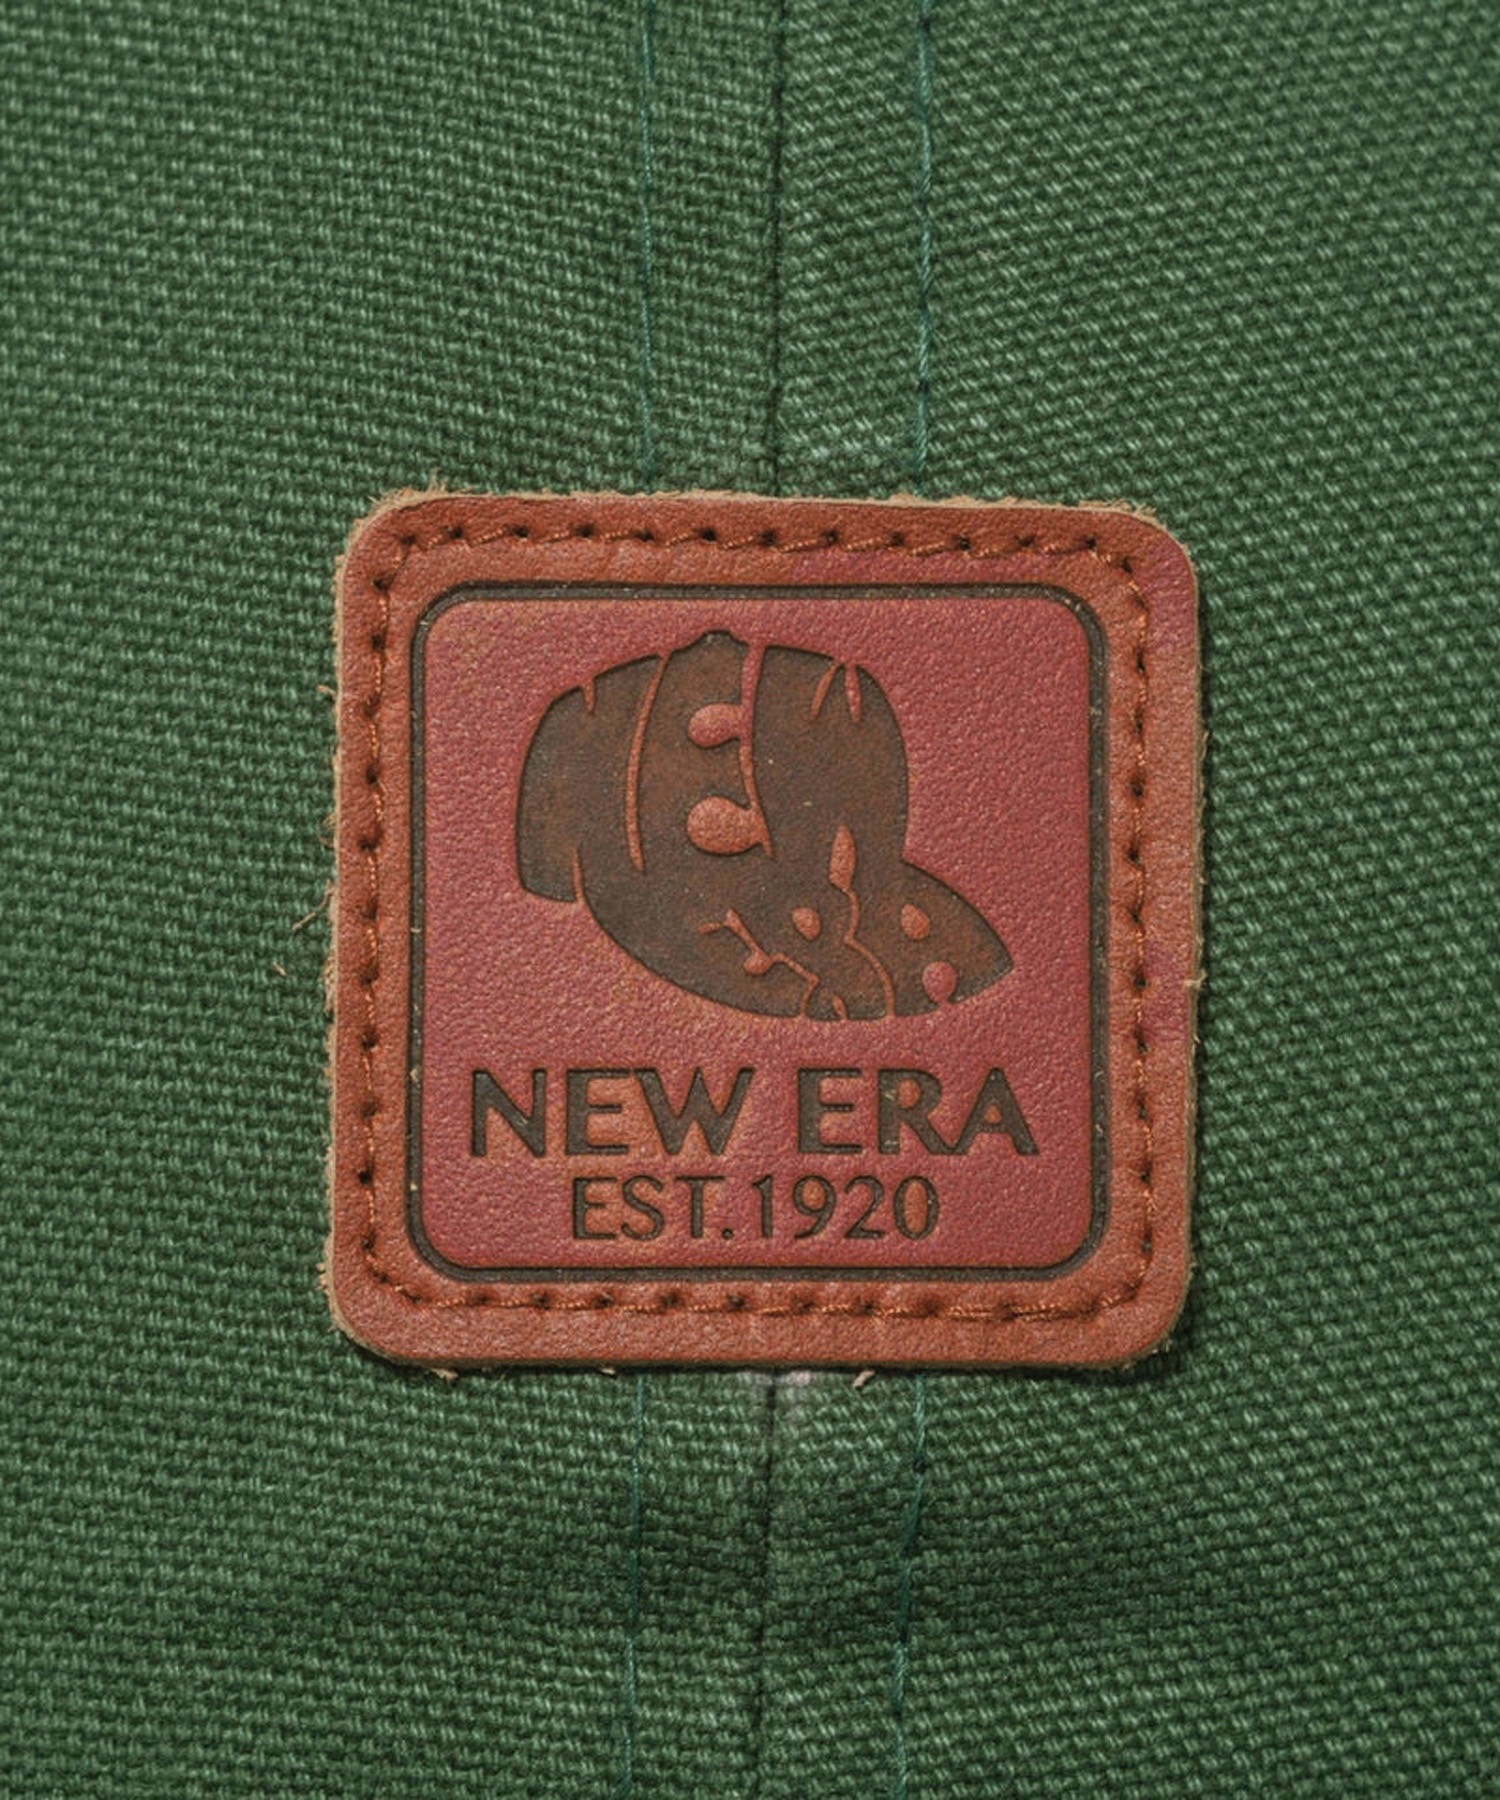 NEW ERA ニューエラ Youth 9TWENTY Leather Patch ダックキャンバス シラントログリーン キッズ キャップ 帽子 14111930(ONECOLOR-YTH)